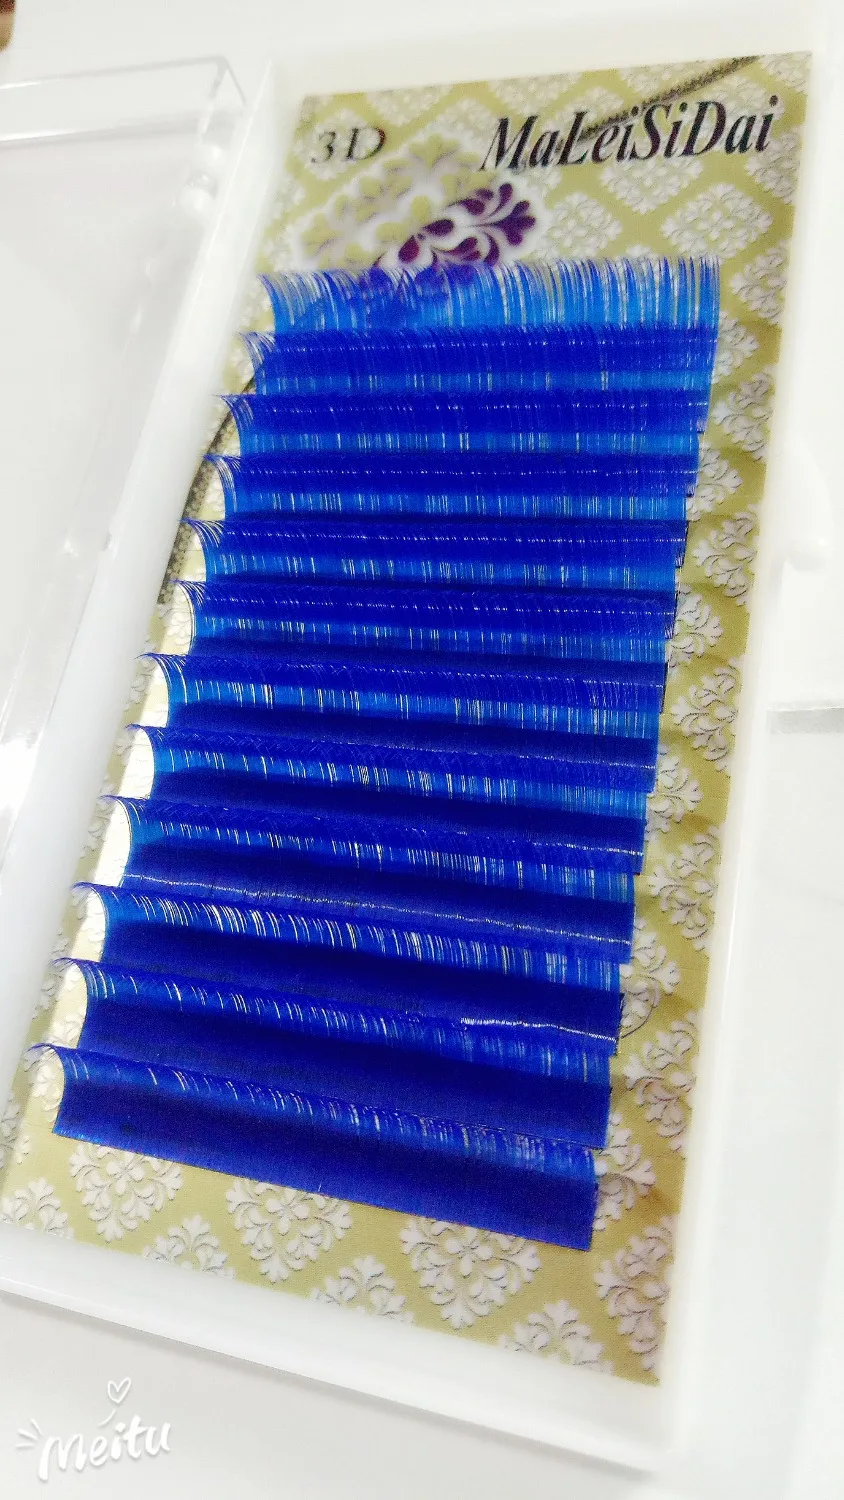 HBZGTLAD C D curl 0,1 мм 8-13 мм Ложные Ресницы Цвет: ярко-синий; ресницы индивидуальные цветные ресницы искусственной объем ресниц для наращивания